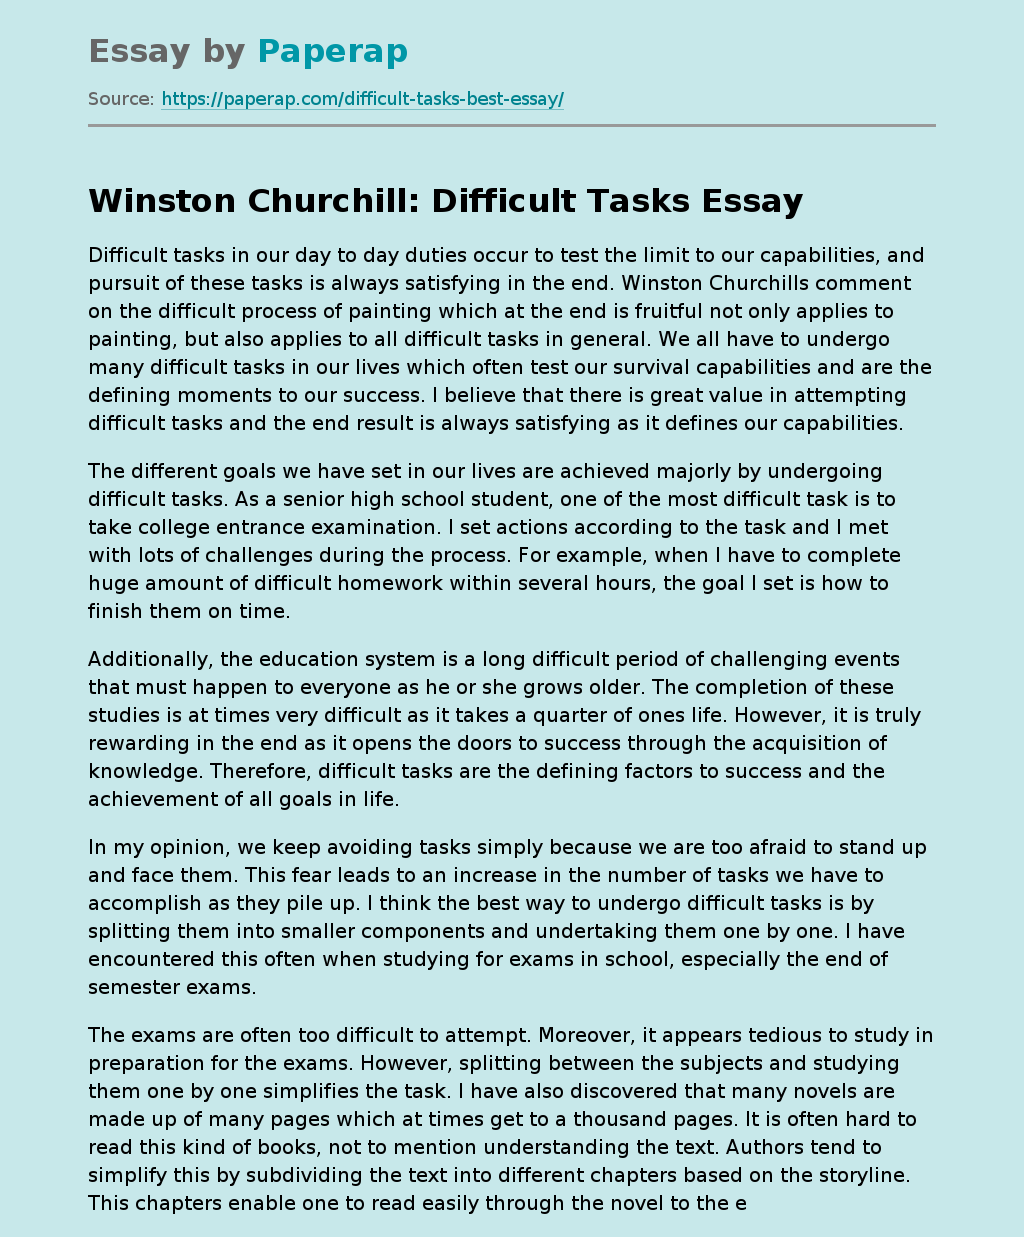 Winston Churchill: Difficult Tasks